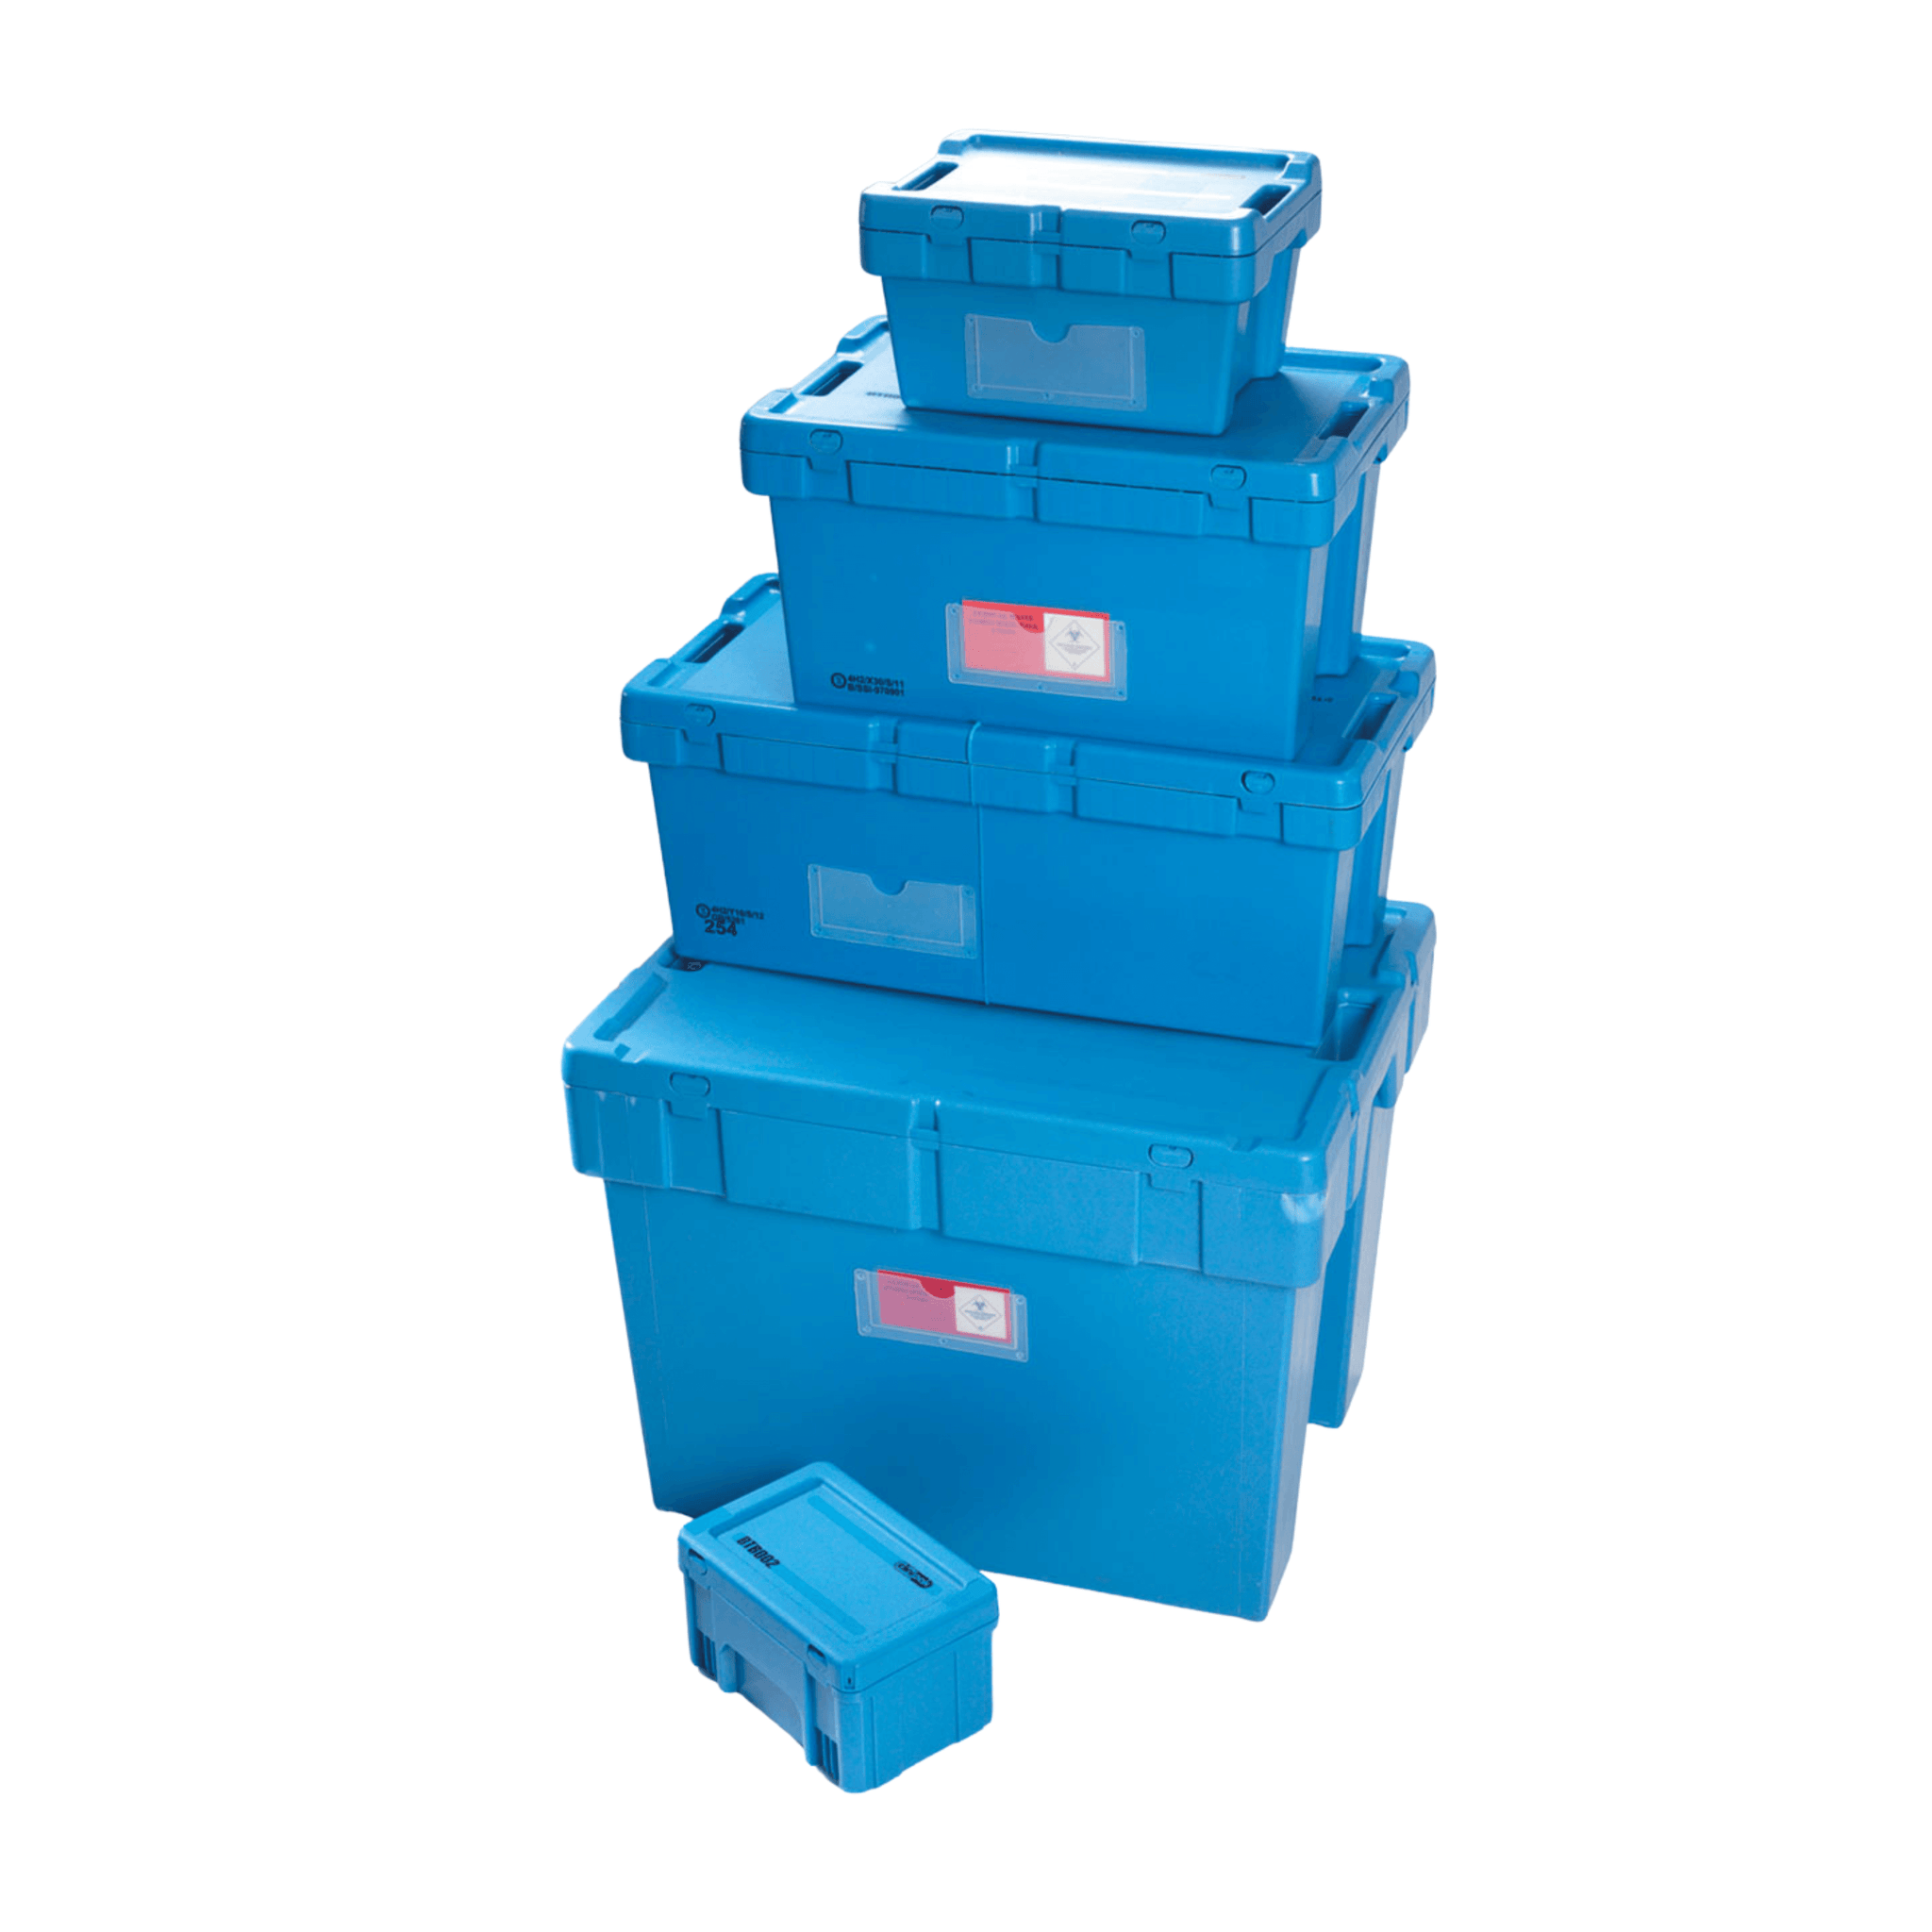 Transport Box- Blue, 1.4 kg, 400 X 300 X 220 mm